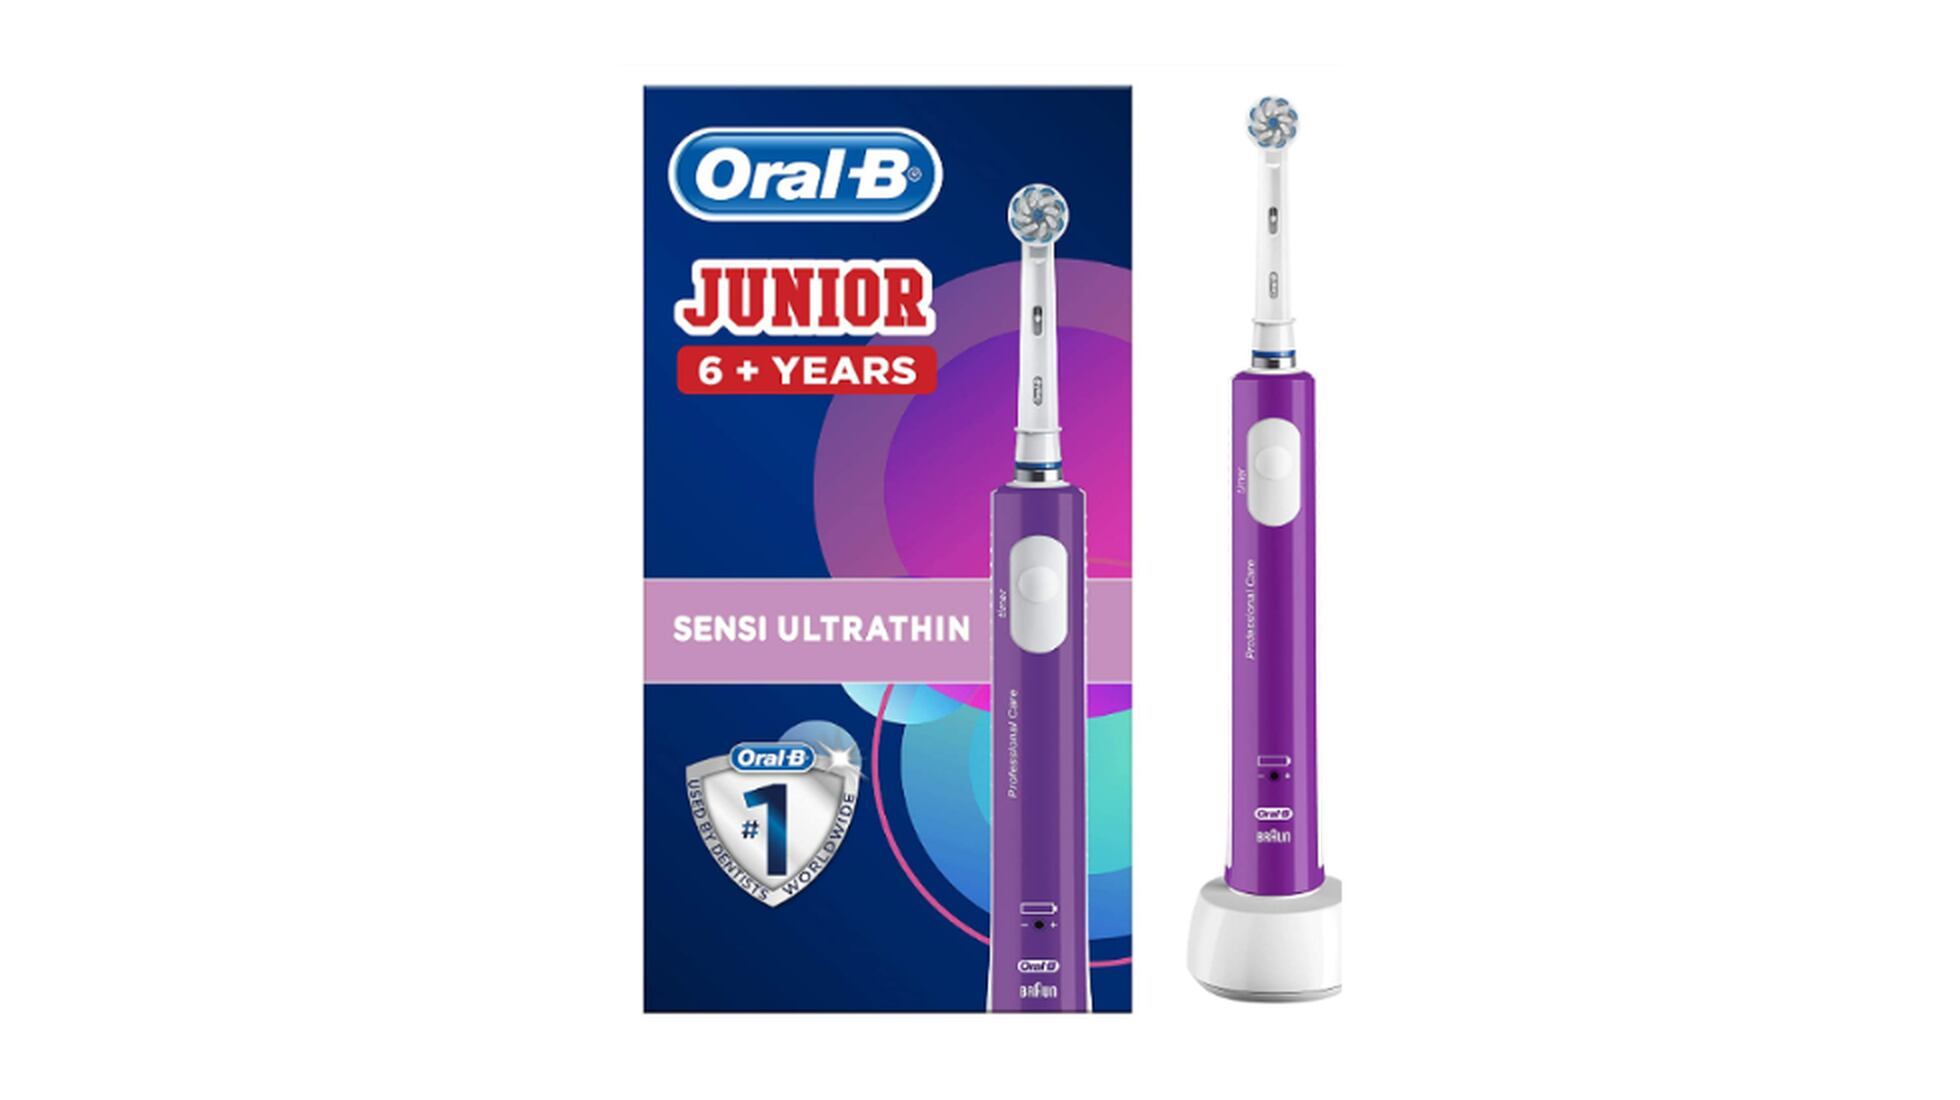 Reunimos los mejores cepillos de dientes eléctricos, según los clientes de   - Showroom